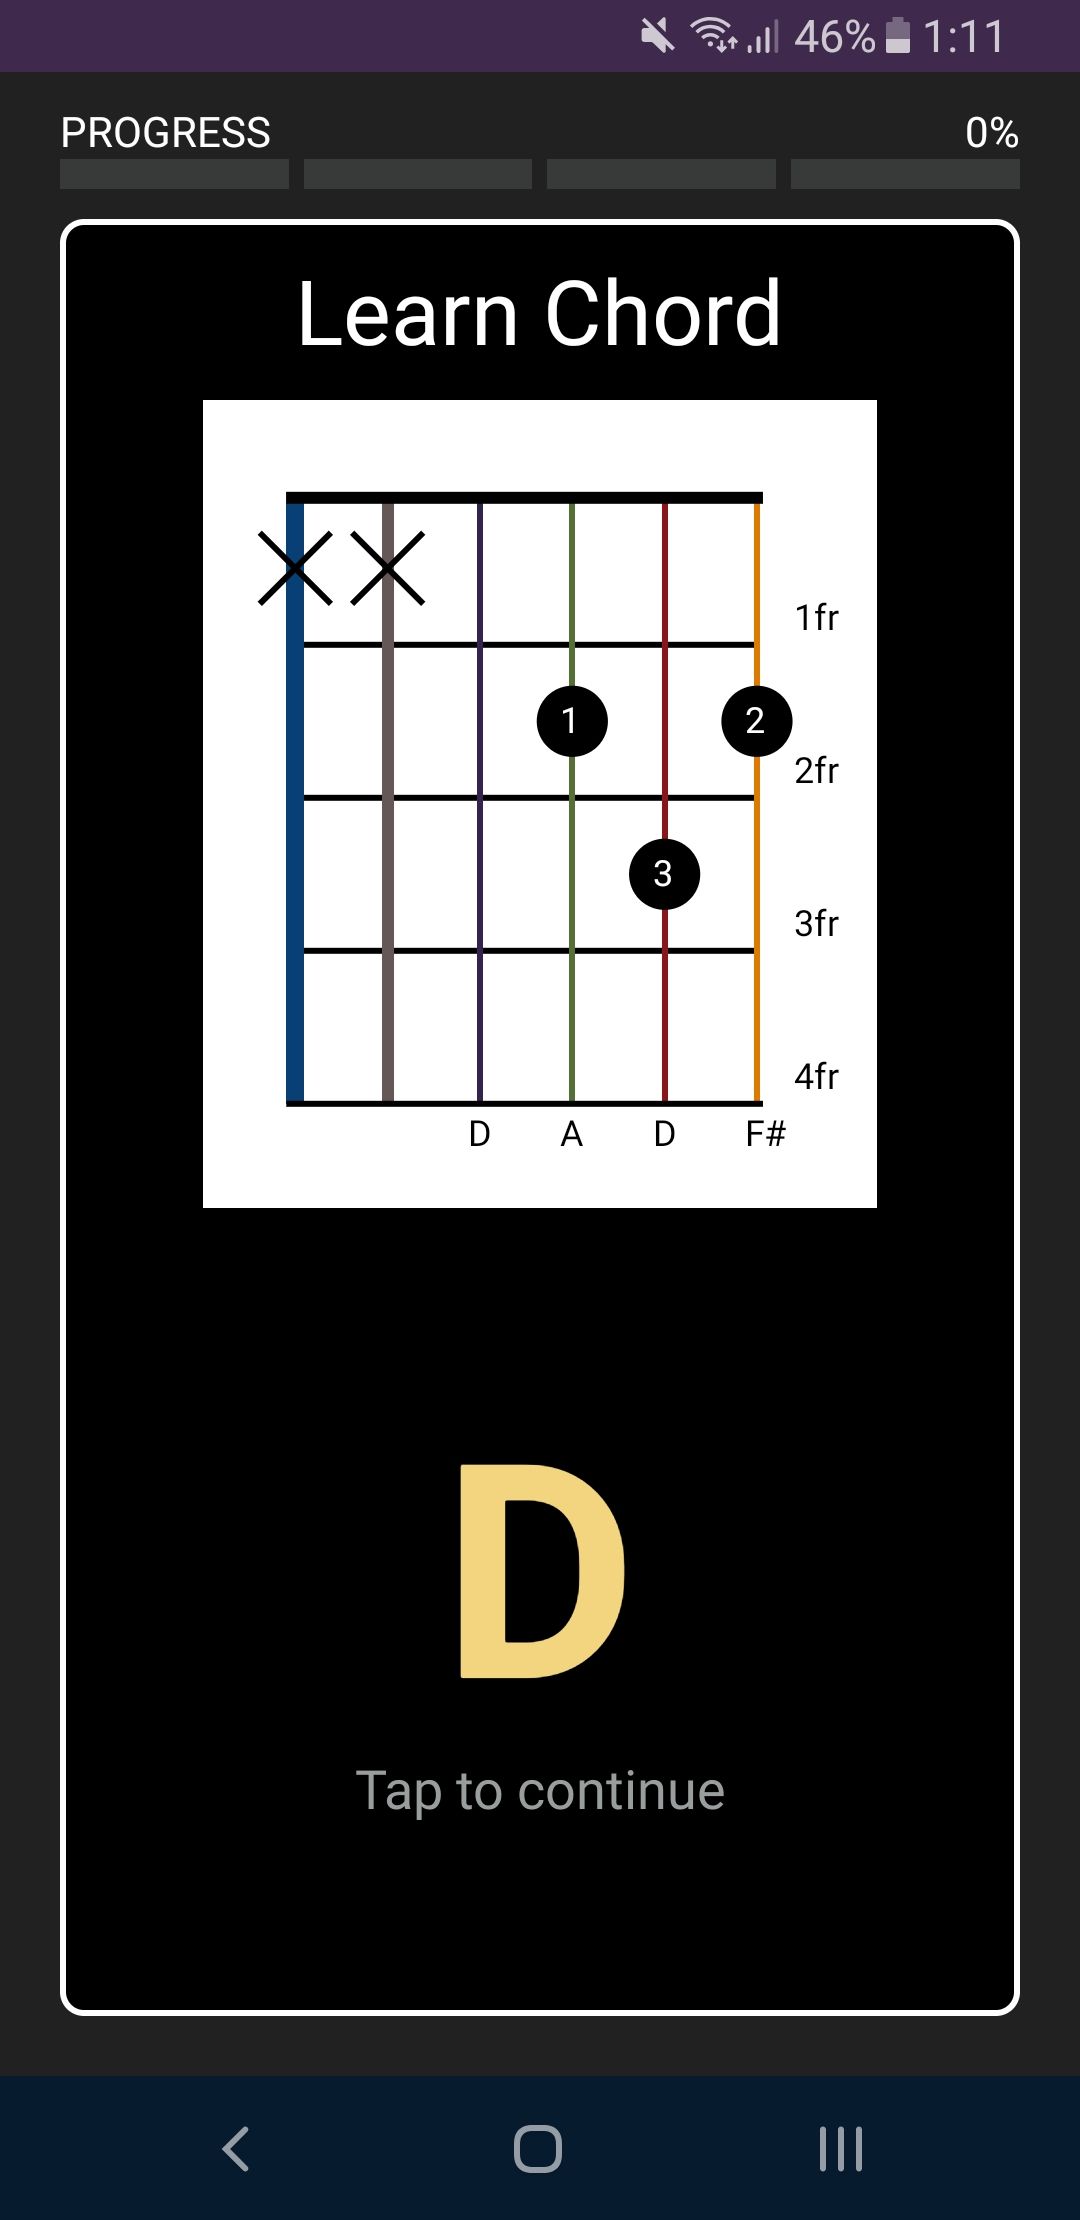 3000 chords learn chord progress